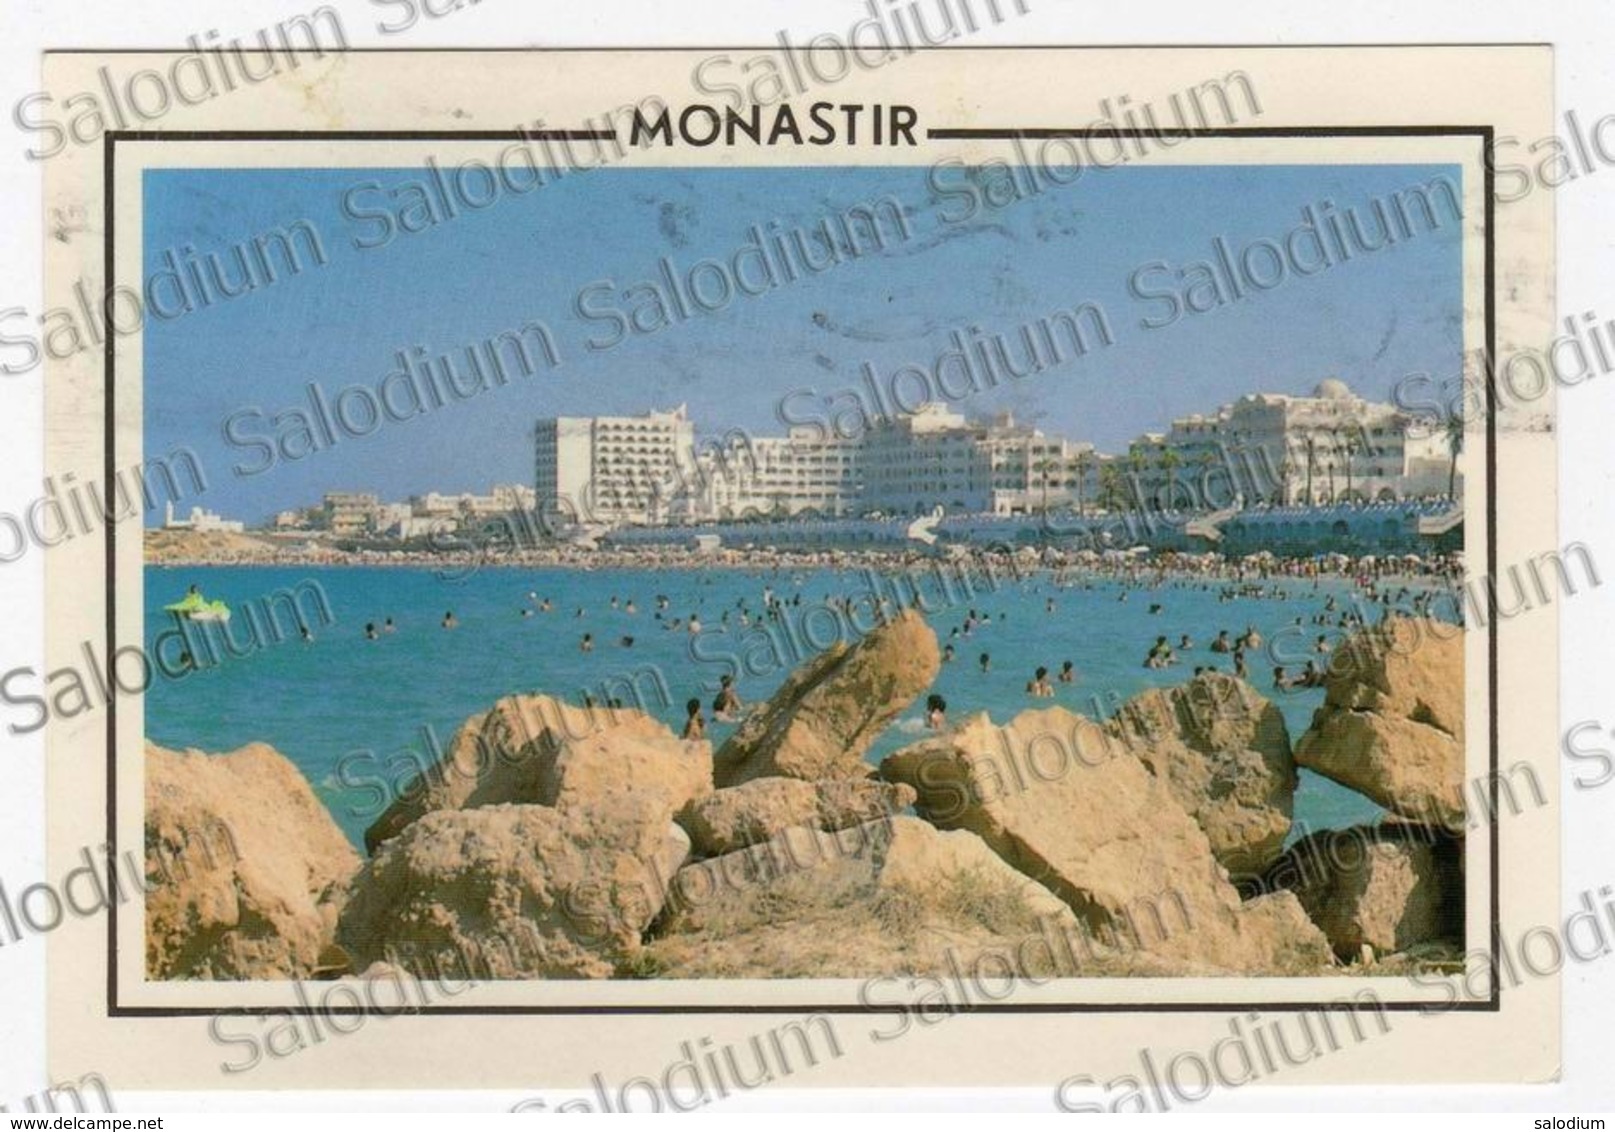 Monastir Tunisia Republique Tunisienne - Tunisia